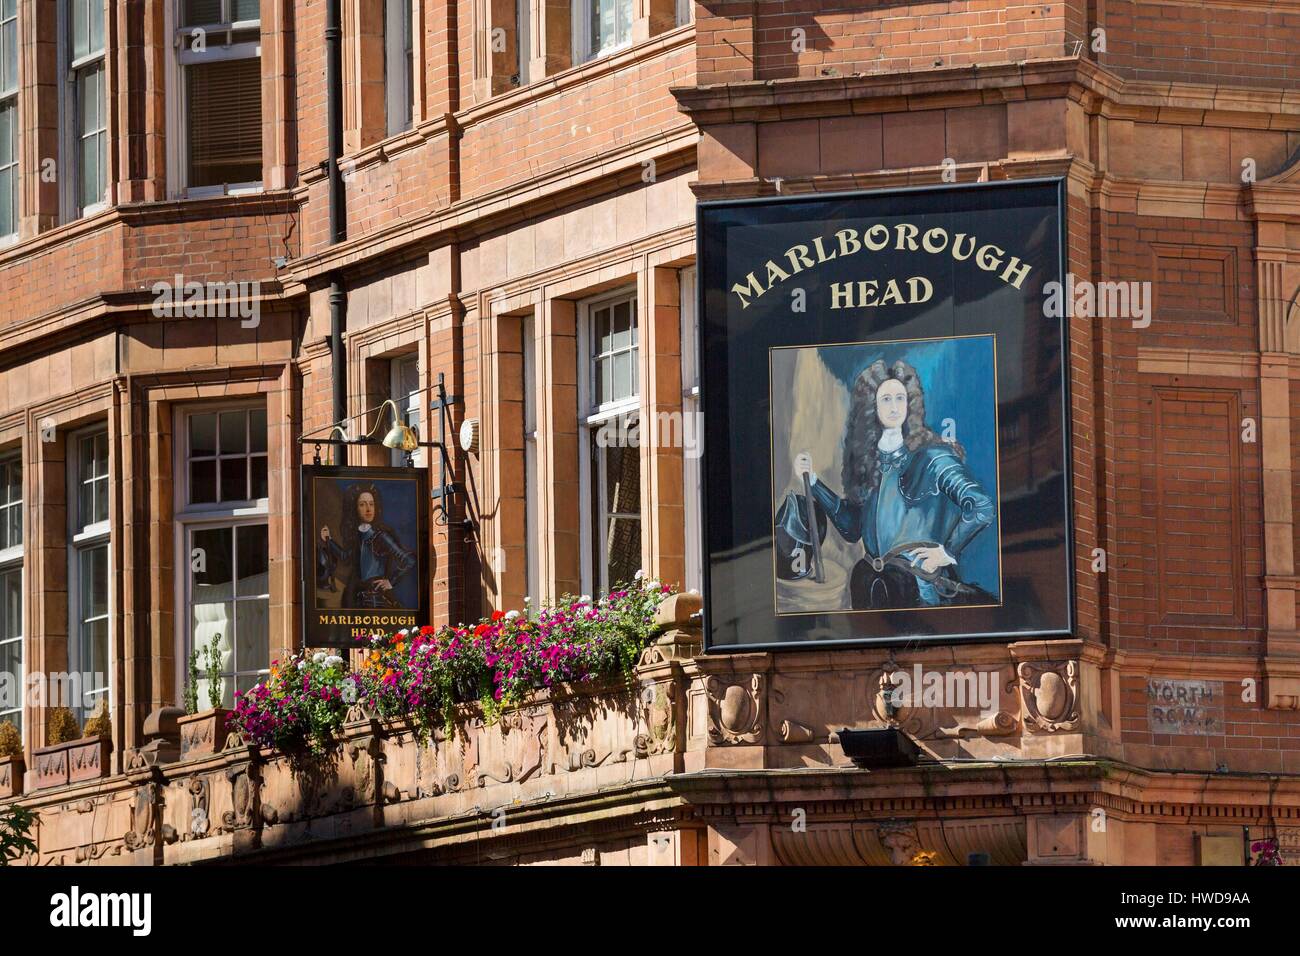 Vereinigtes Königreich, London, Mayfair, North Audley Street in der Nähe von Oxford Street, Marlborough Head Pub, orange Backsteinfassade, portrait Stockfoto